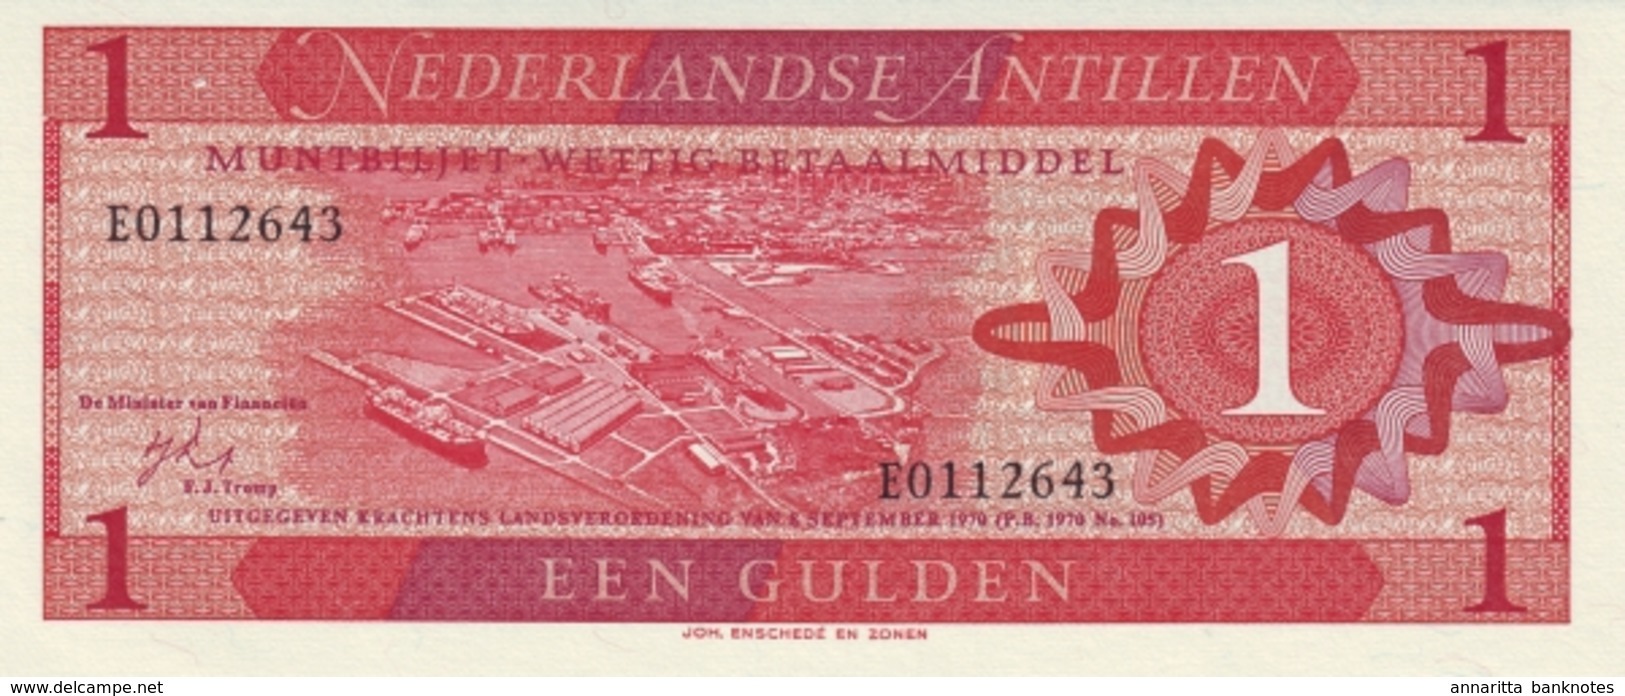 ANTILLES NÉERLANDAISES 1 GULDEN 1970 P-20 NEUF [AN102a] - Netherlands Antilles (...-1986)